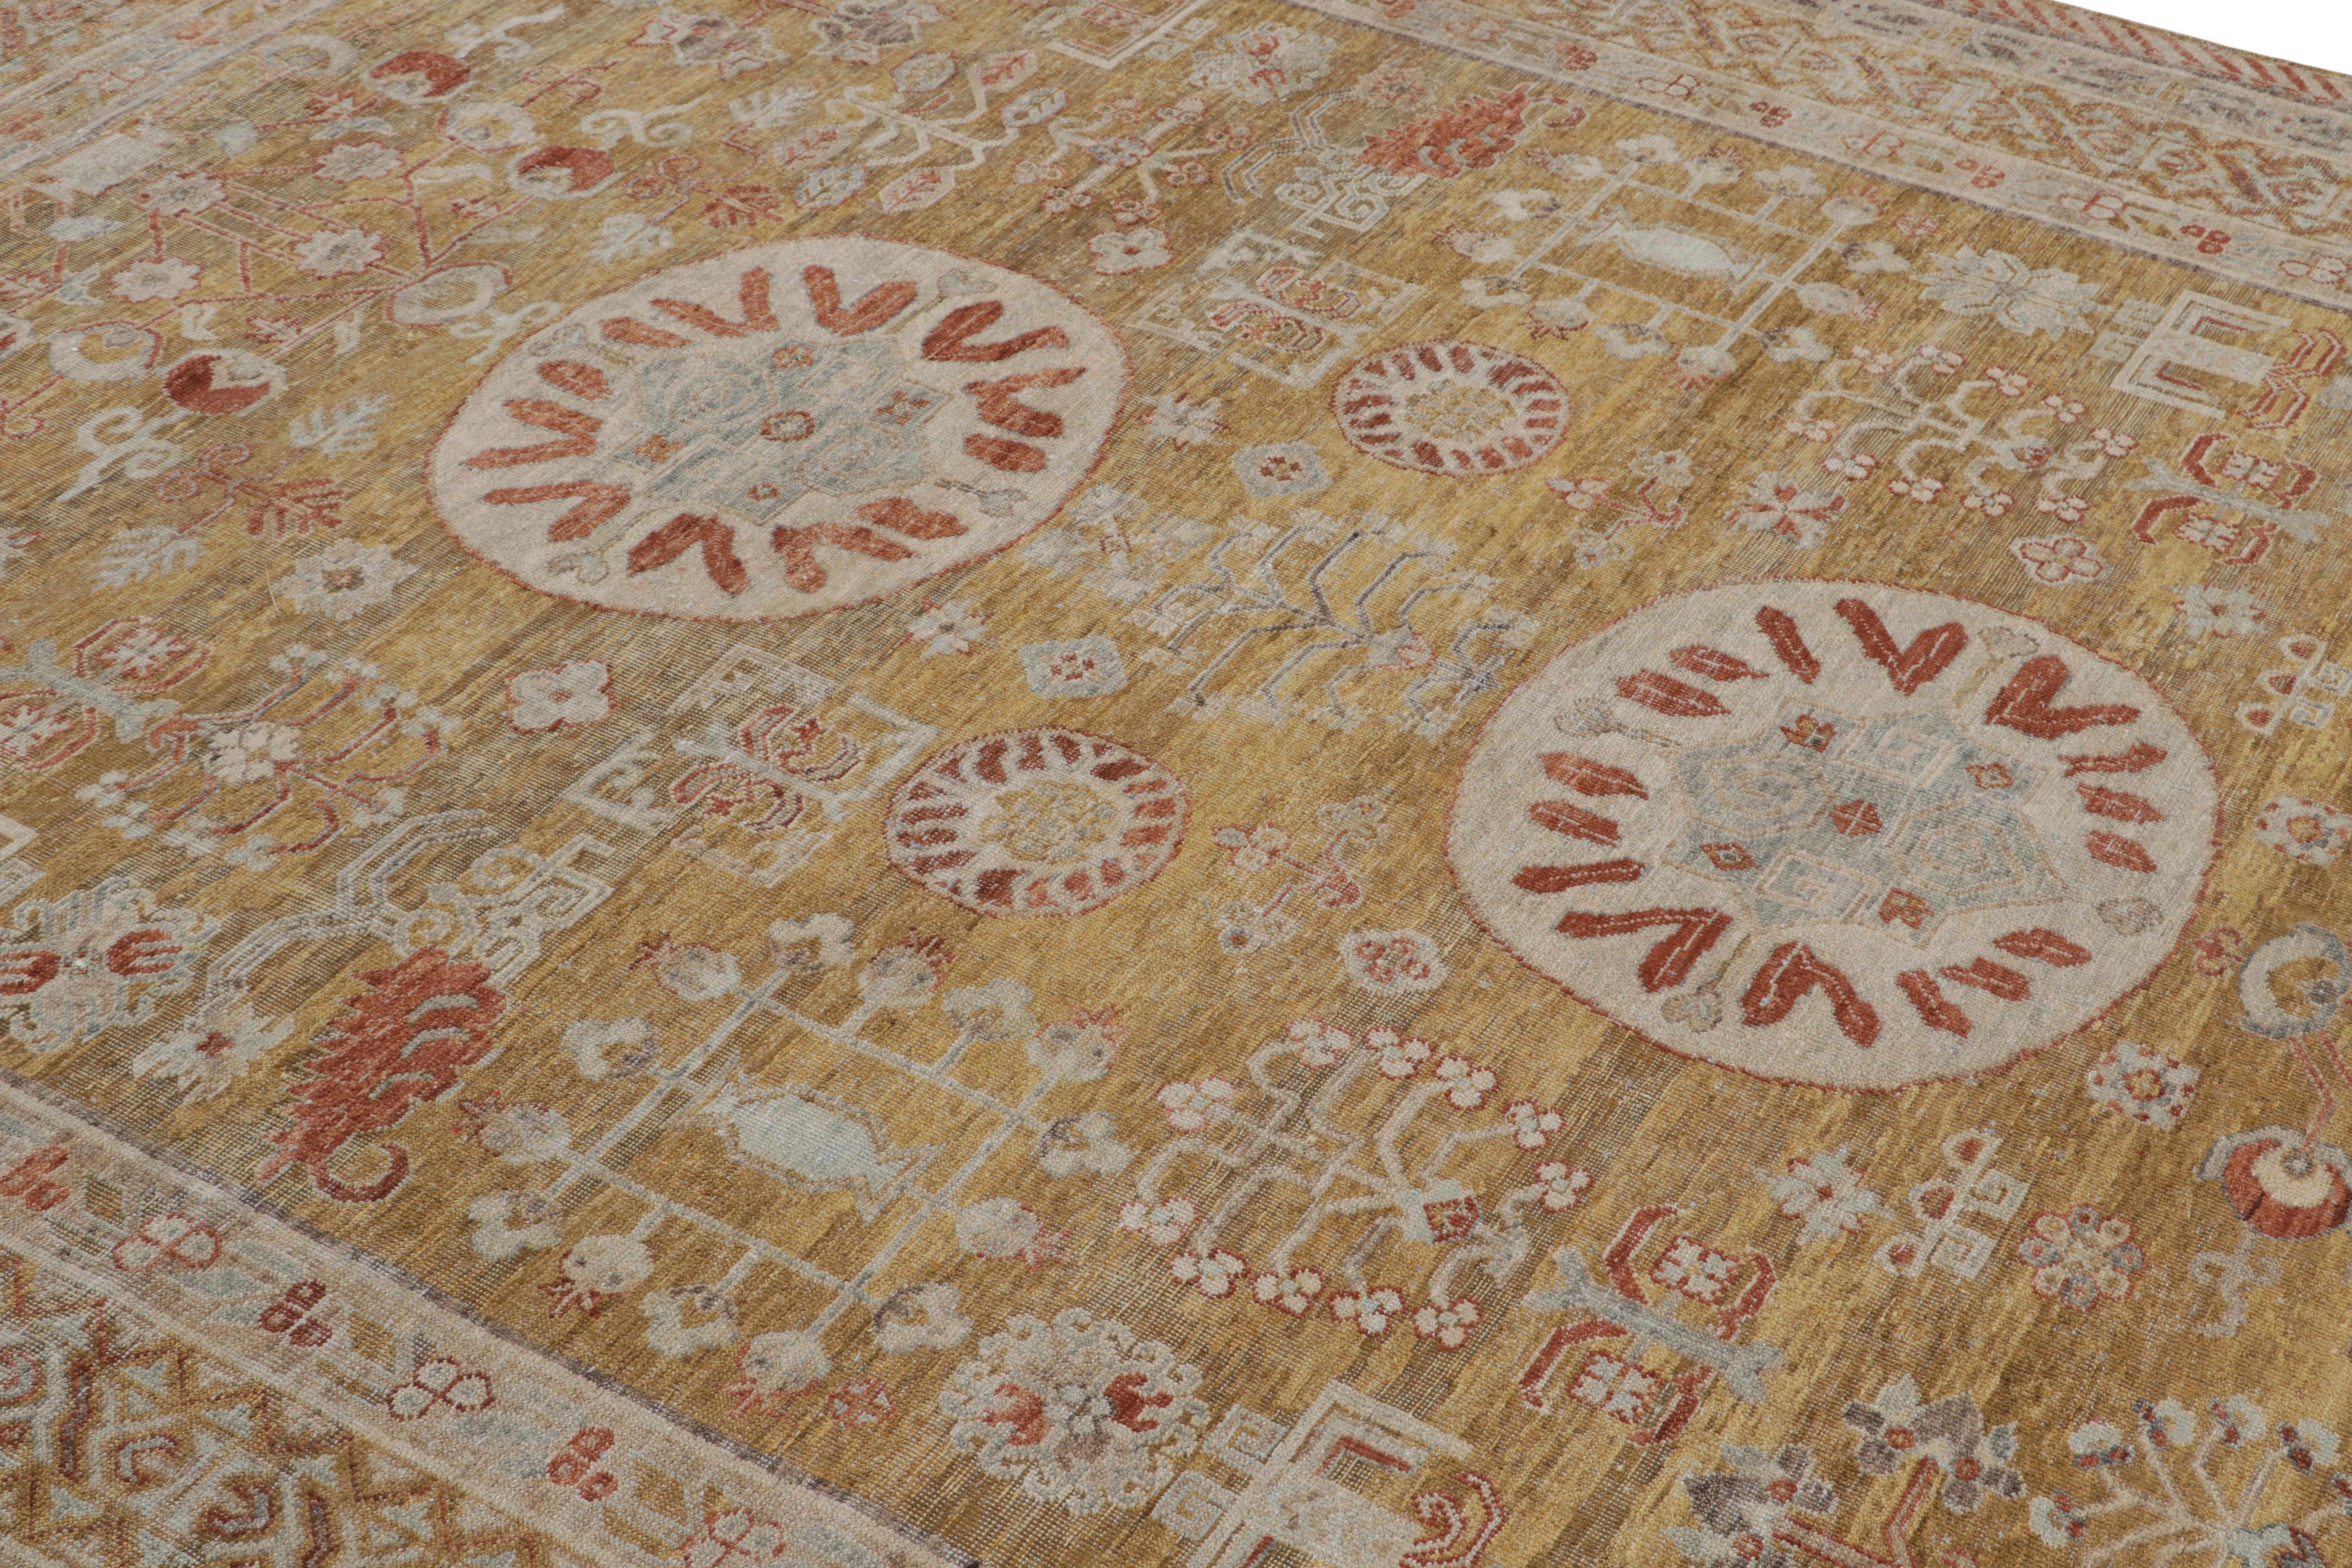 Noué à la main en laine, ce nouveau tapis 8x10 de la Collection Modern Classics de Rug & Kilim s'inspire des tapis anciens du Khotan.

Sur le Design :

Le tapis présente un champ or et une bordure rouge rouille, soulignant un jeu de médaillons et de